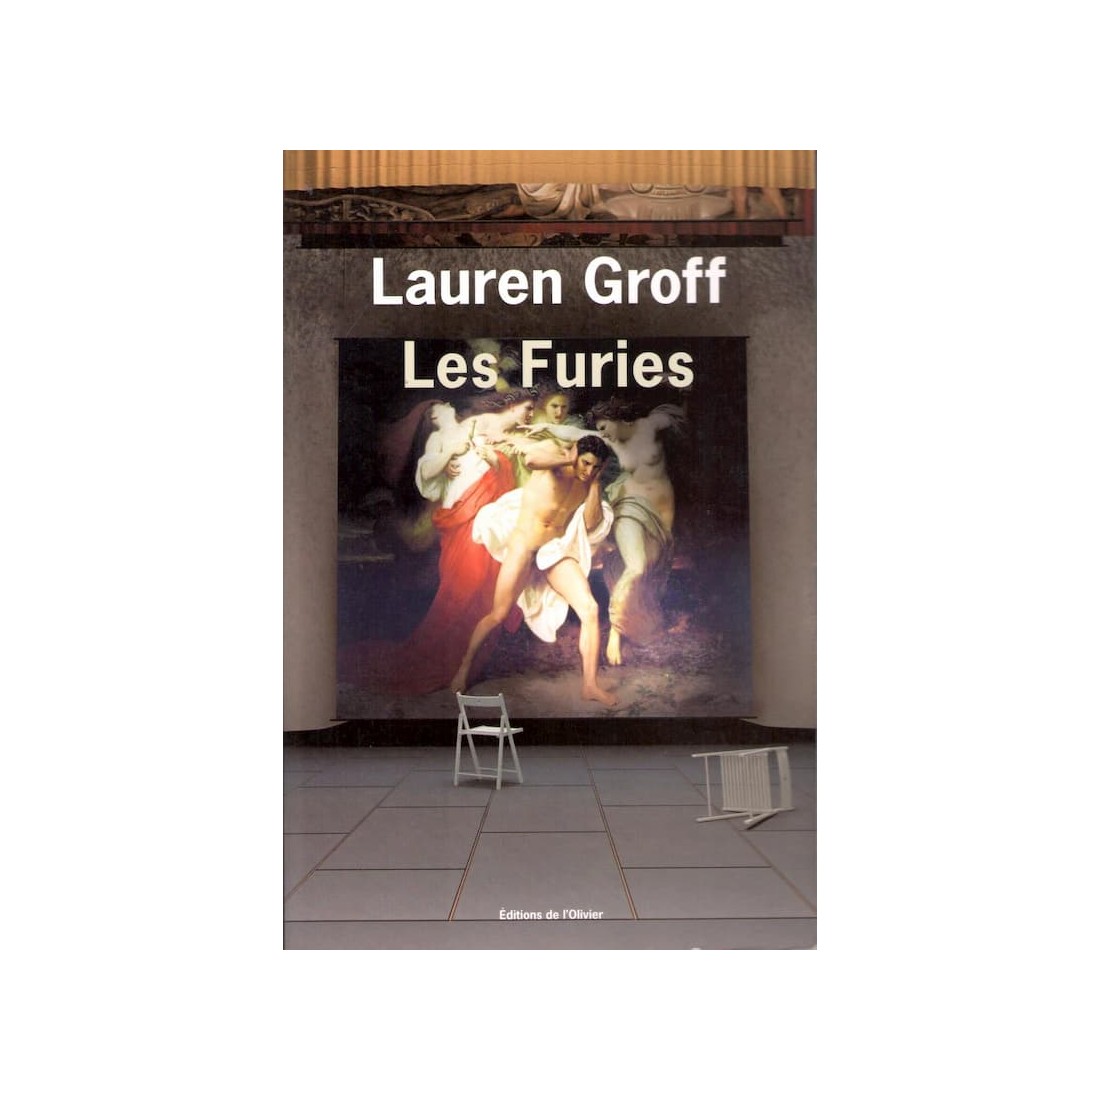 Les Furies - Roman de Lauren Groff - Ocazlivres.com